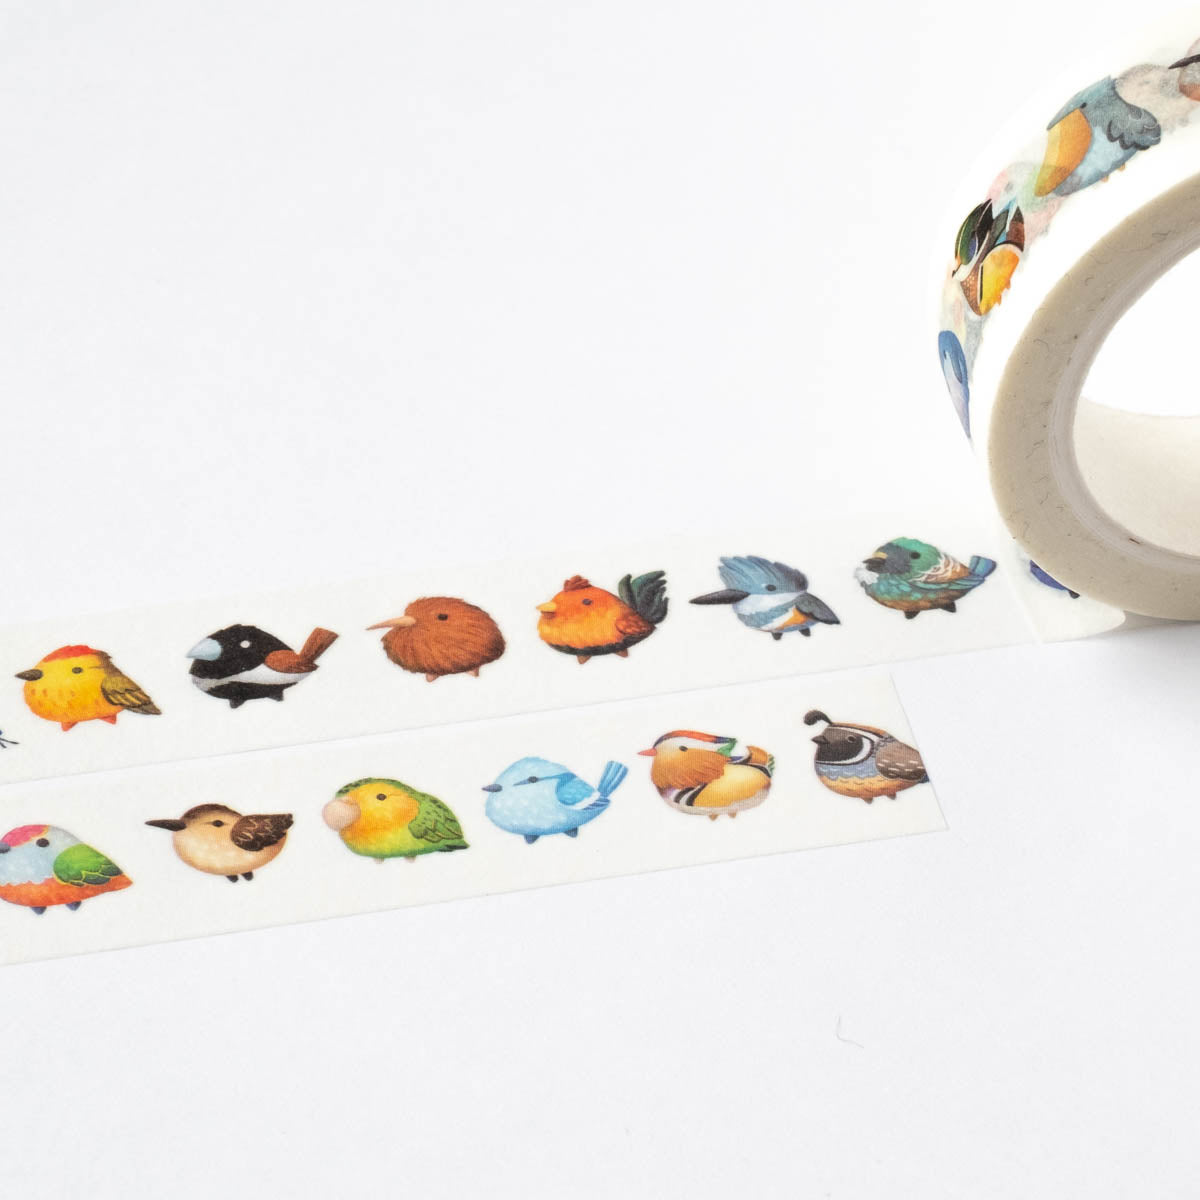 Washi tape - Bird lovers